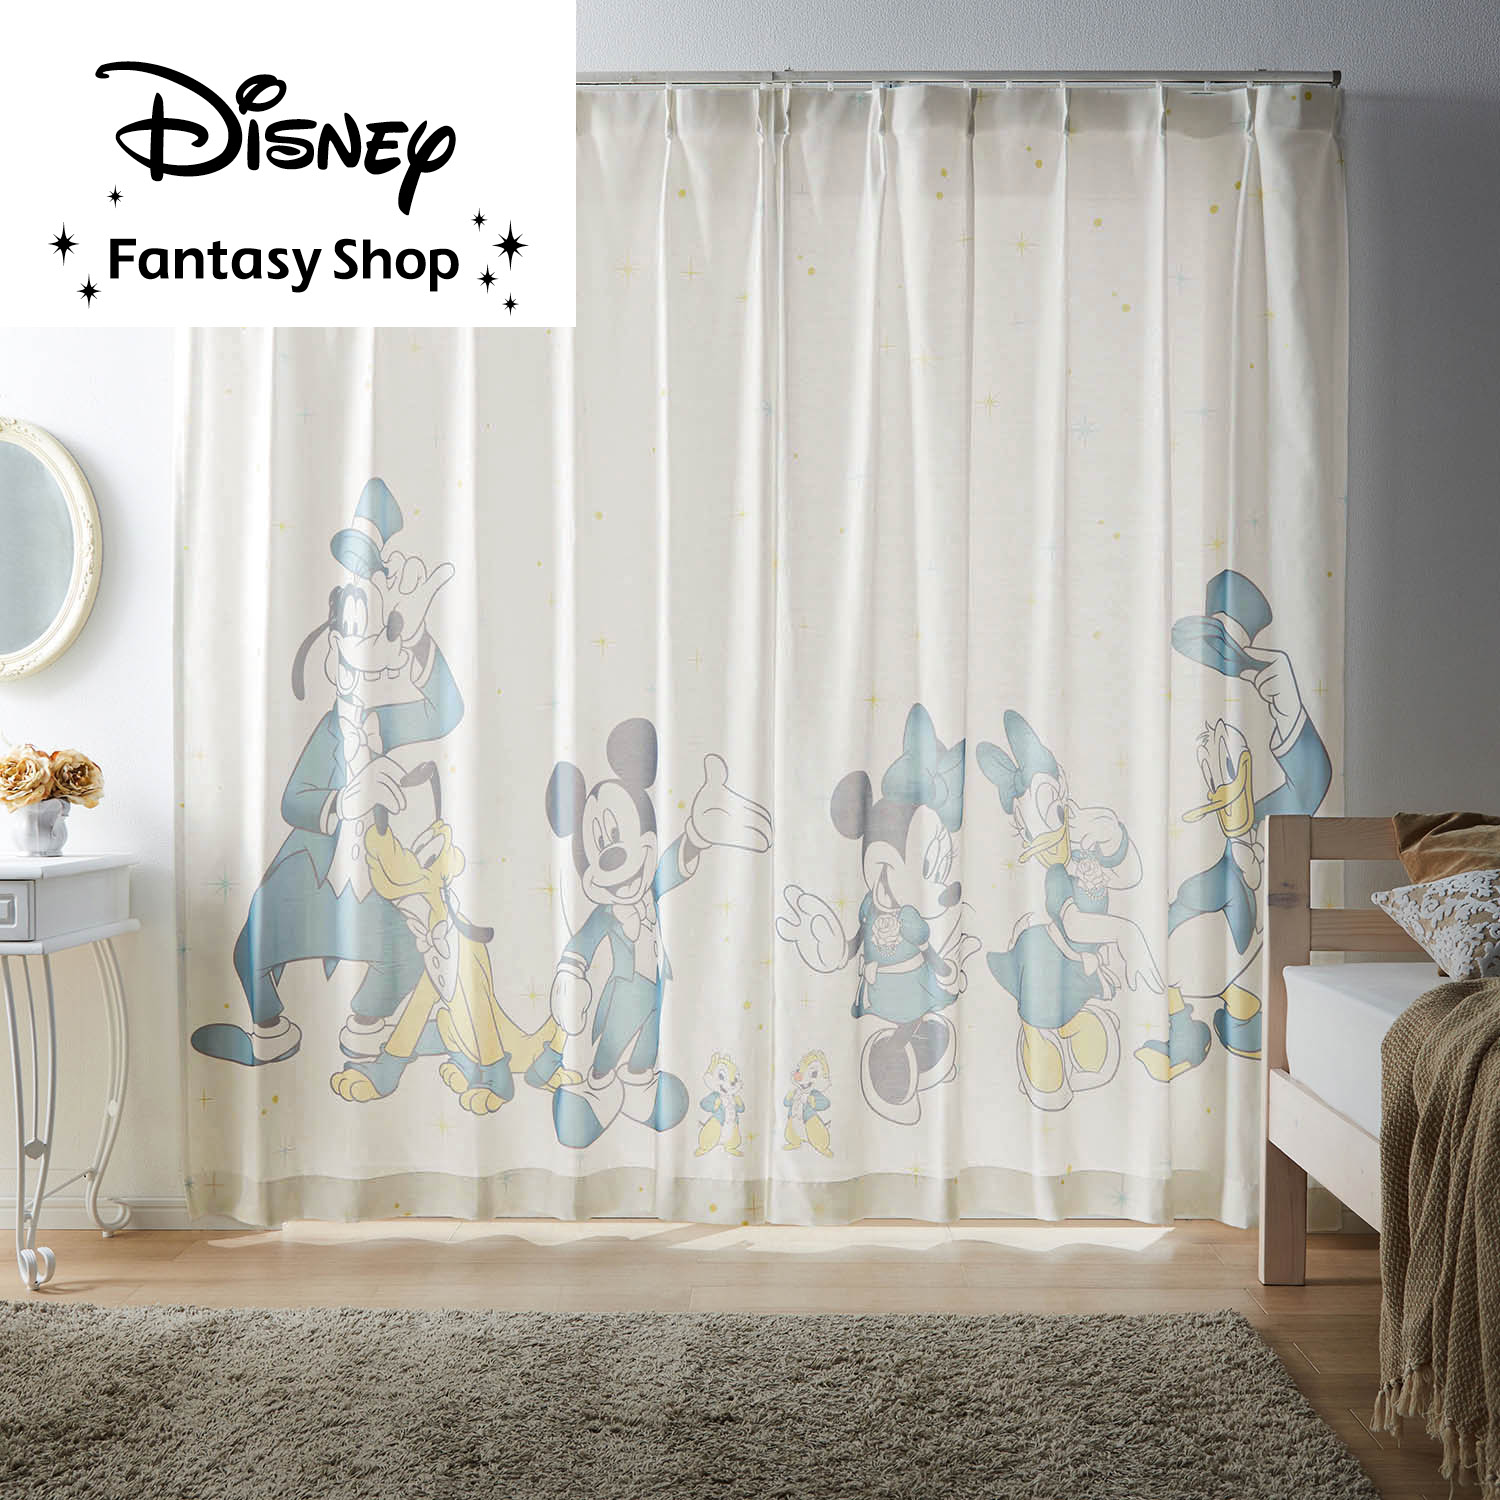 【ディズニー/Disney】一枚絵のようなUVカット・遮像・遮熱ボイルレースカーテン「ミッキー & フレンズ」